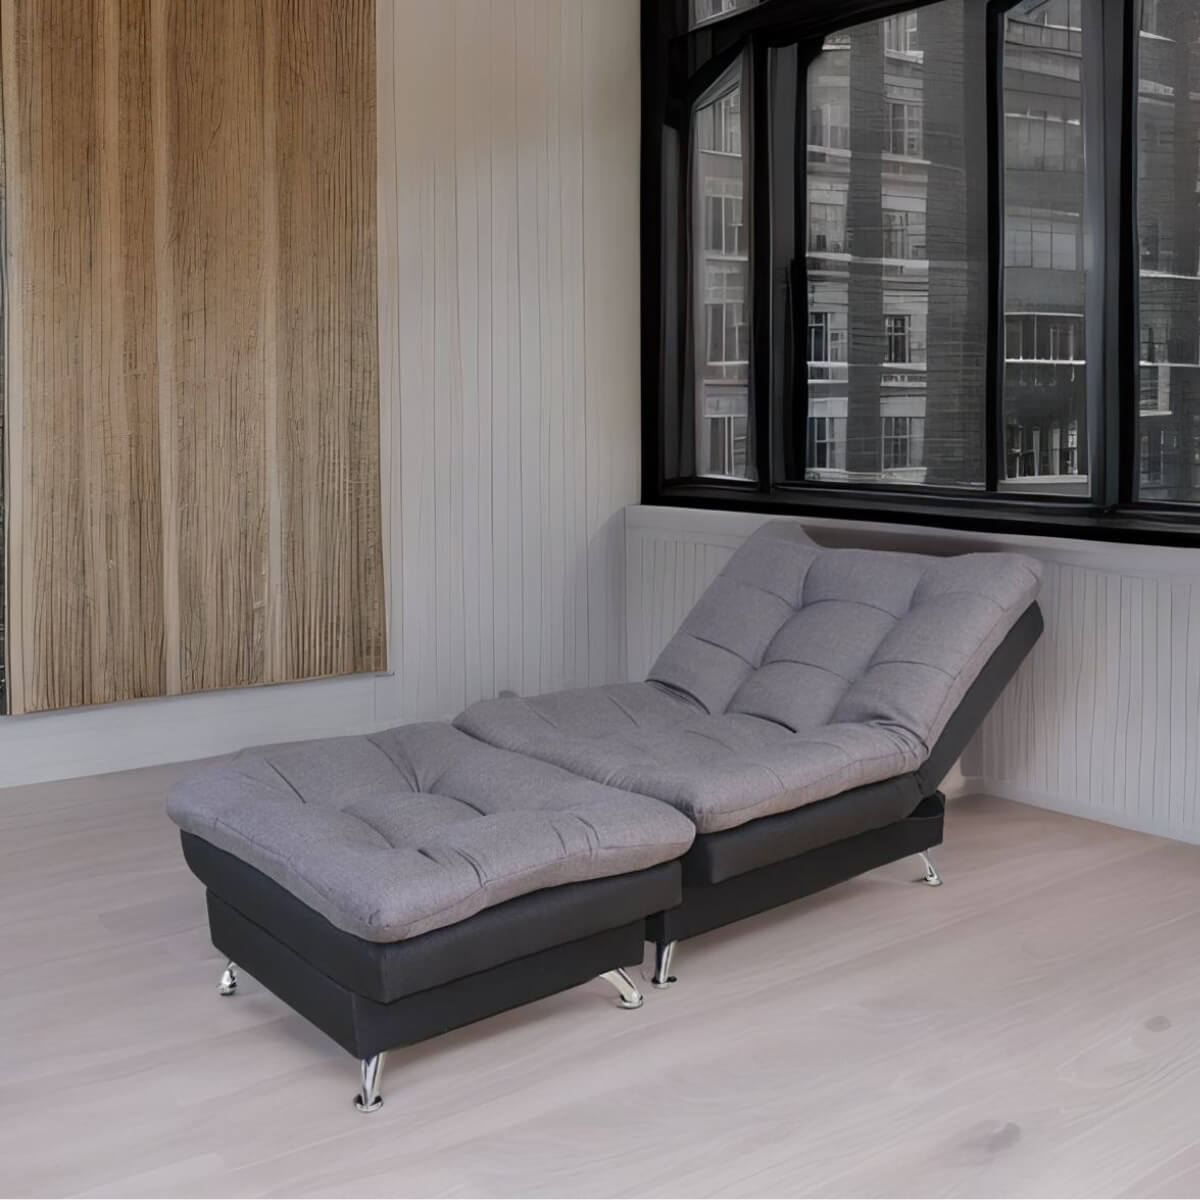 comprar sillón sofá cama gris moderno minimalista cómodo oferta cerca de mi norval #color_negro - grey